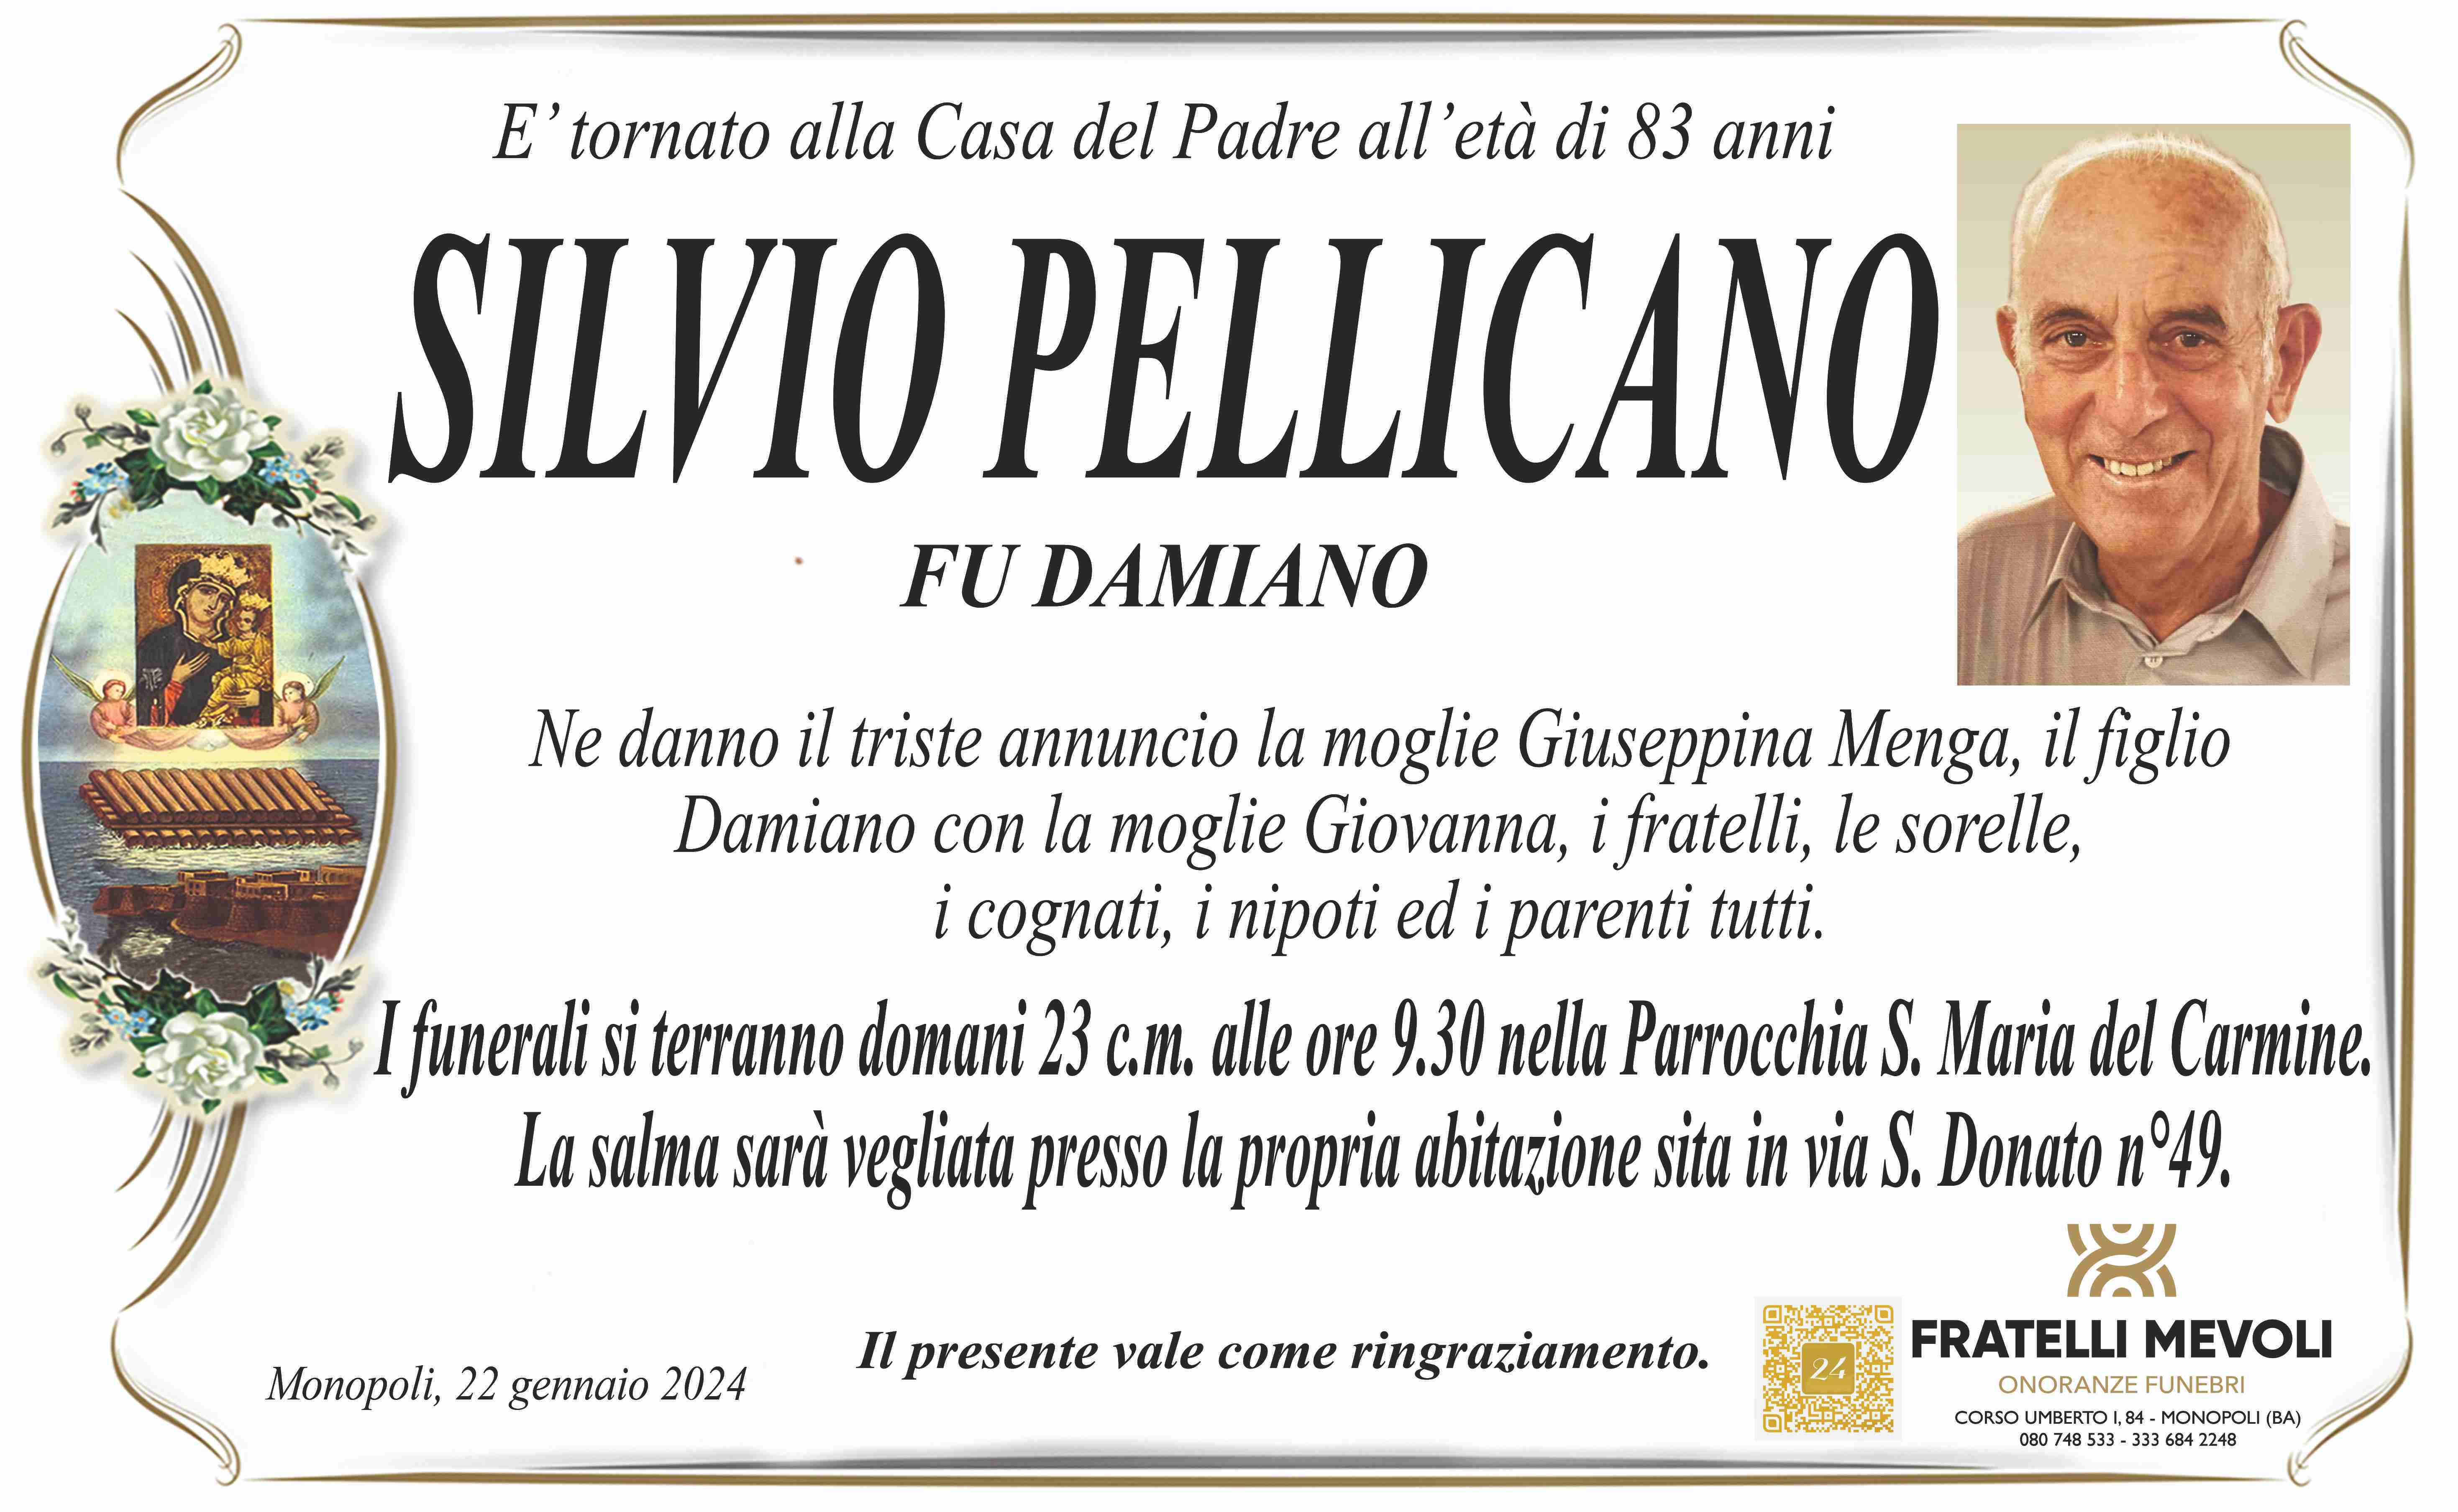 Silvio Pellicano